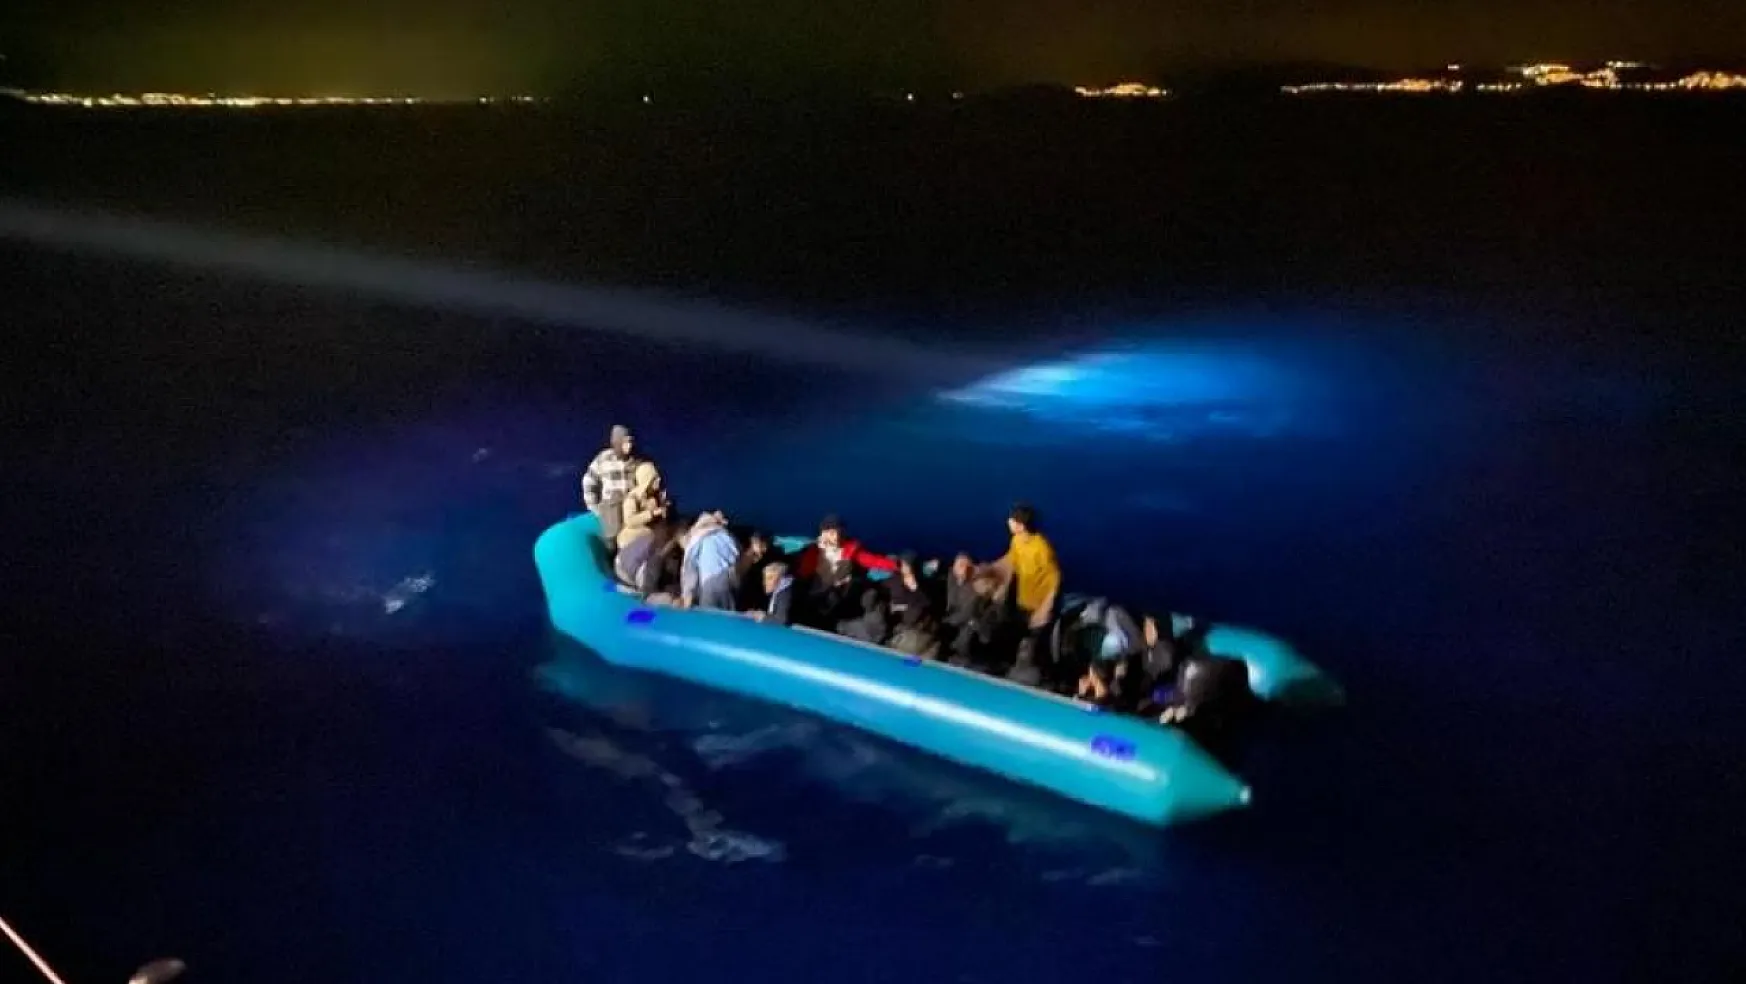 TCSG-310 gemisi düzensiz göçmenleri yakaladı